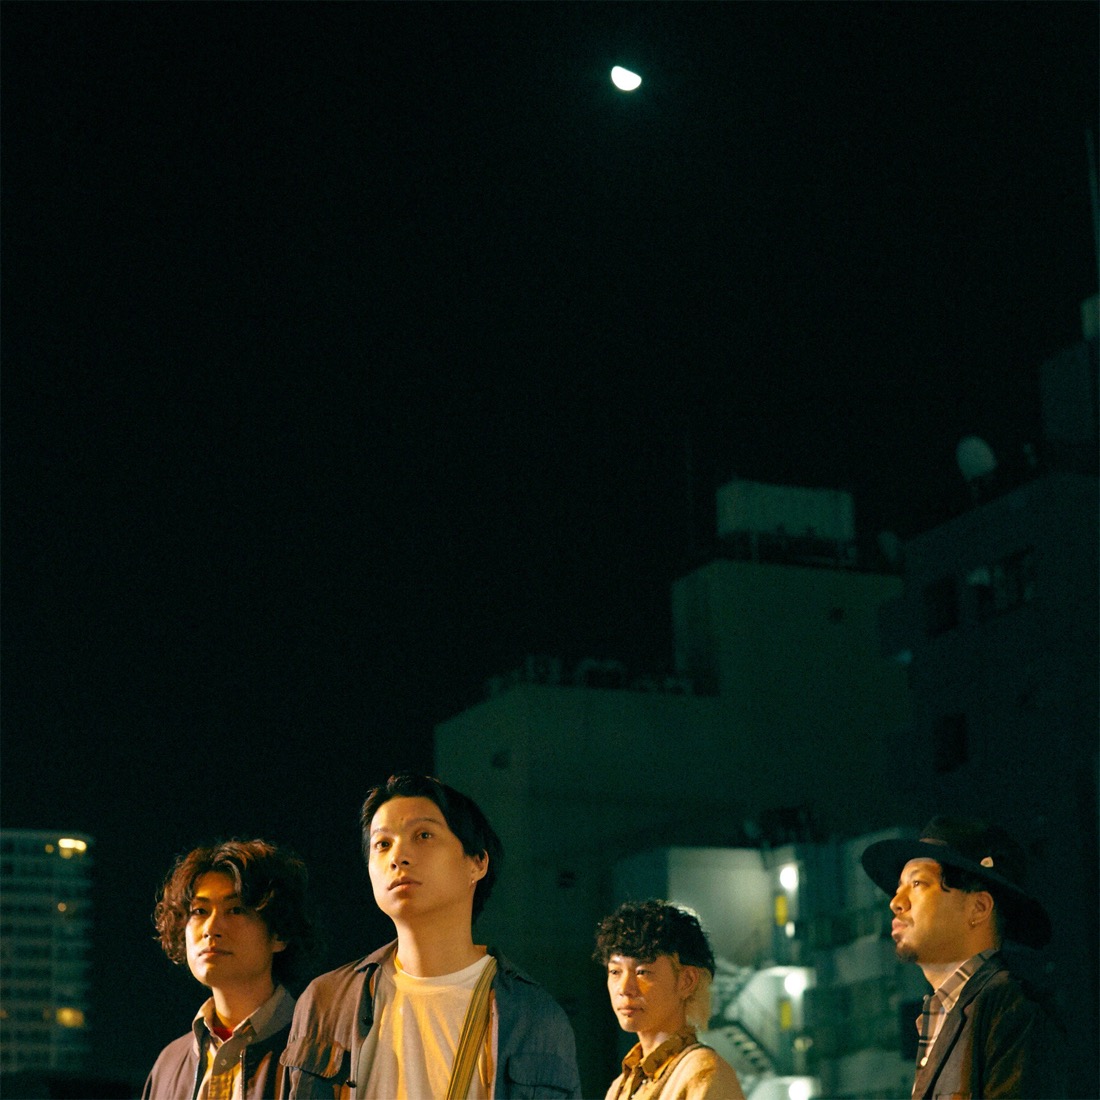 クリープハイプ、9月8日“クリープハイプの日”に、大阪城音楽堂にてワンマンライブを開催